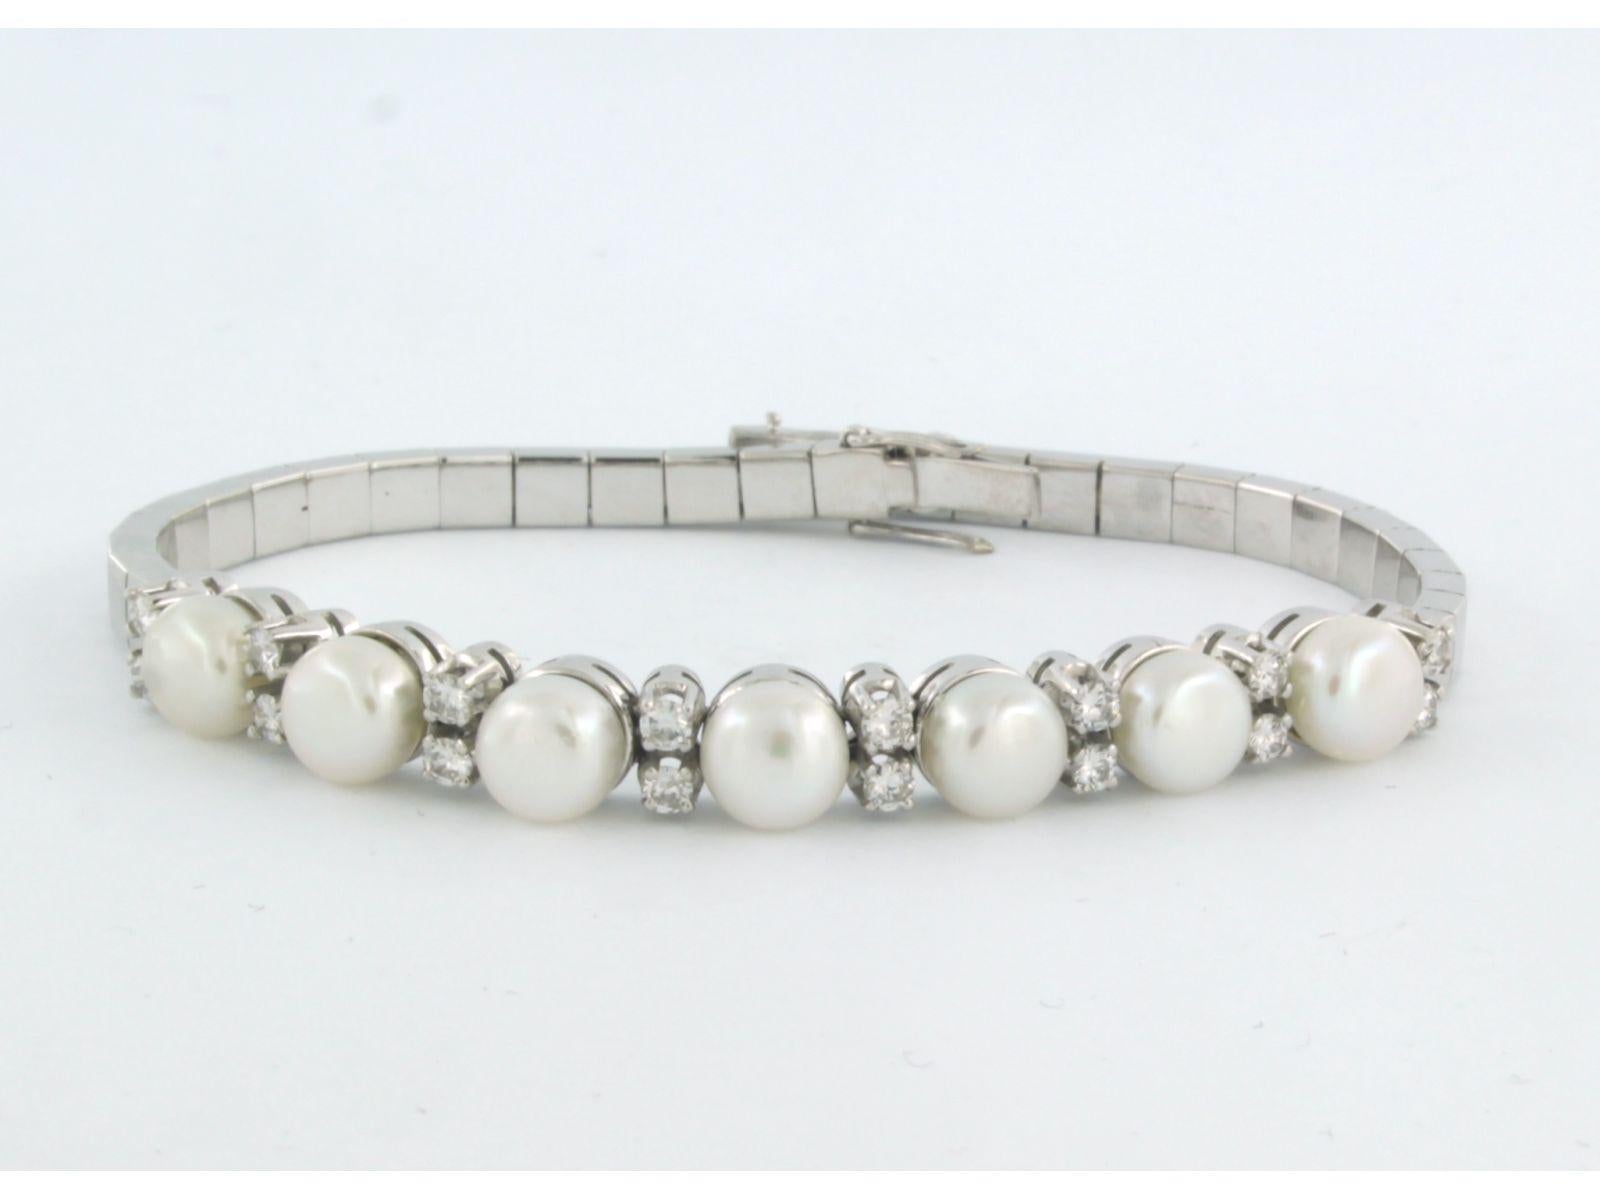 Bracelet en or blanc 18k serti d'une perle et de diamants taille brillant. 0,50ct - F/G - VS/SI - 18 cm de long

description détaillée

 Le bracelet mesure 18 cm de long, 6,3 mm de large et 6,5 mm de haut.

poids 18,8 grammes

set avec

- Perle